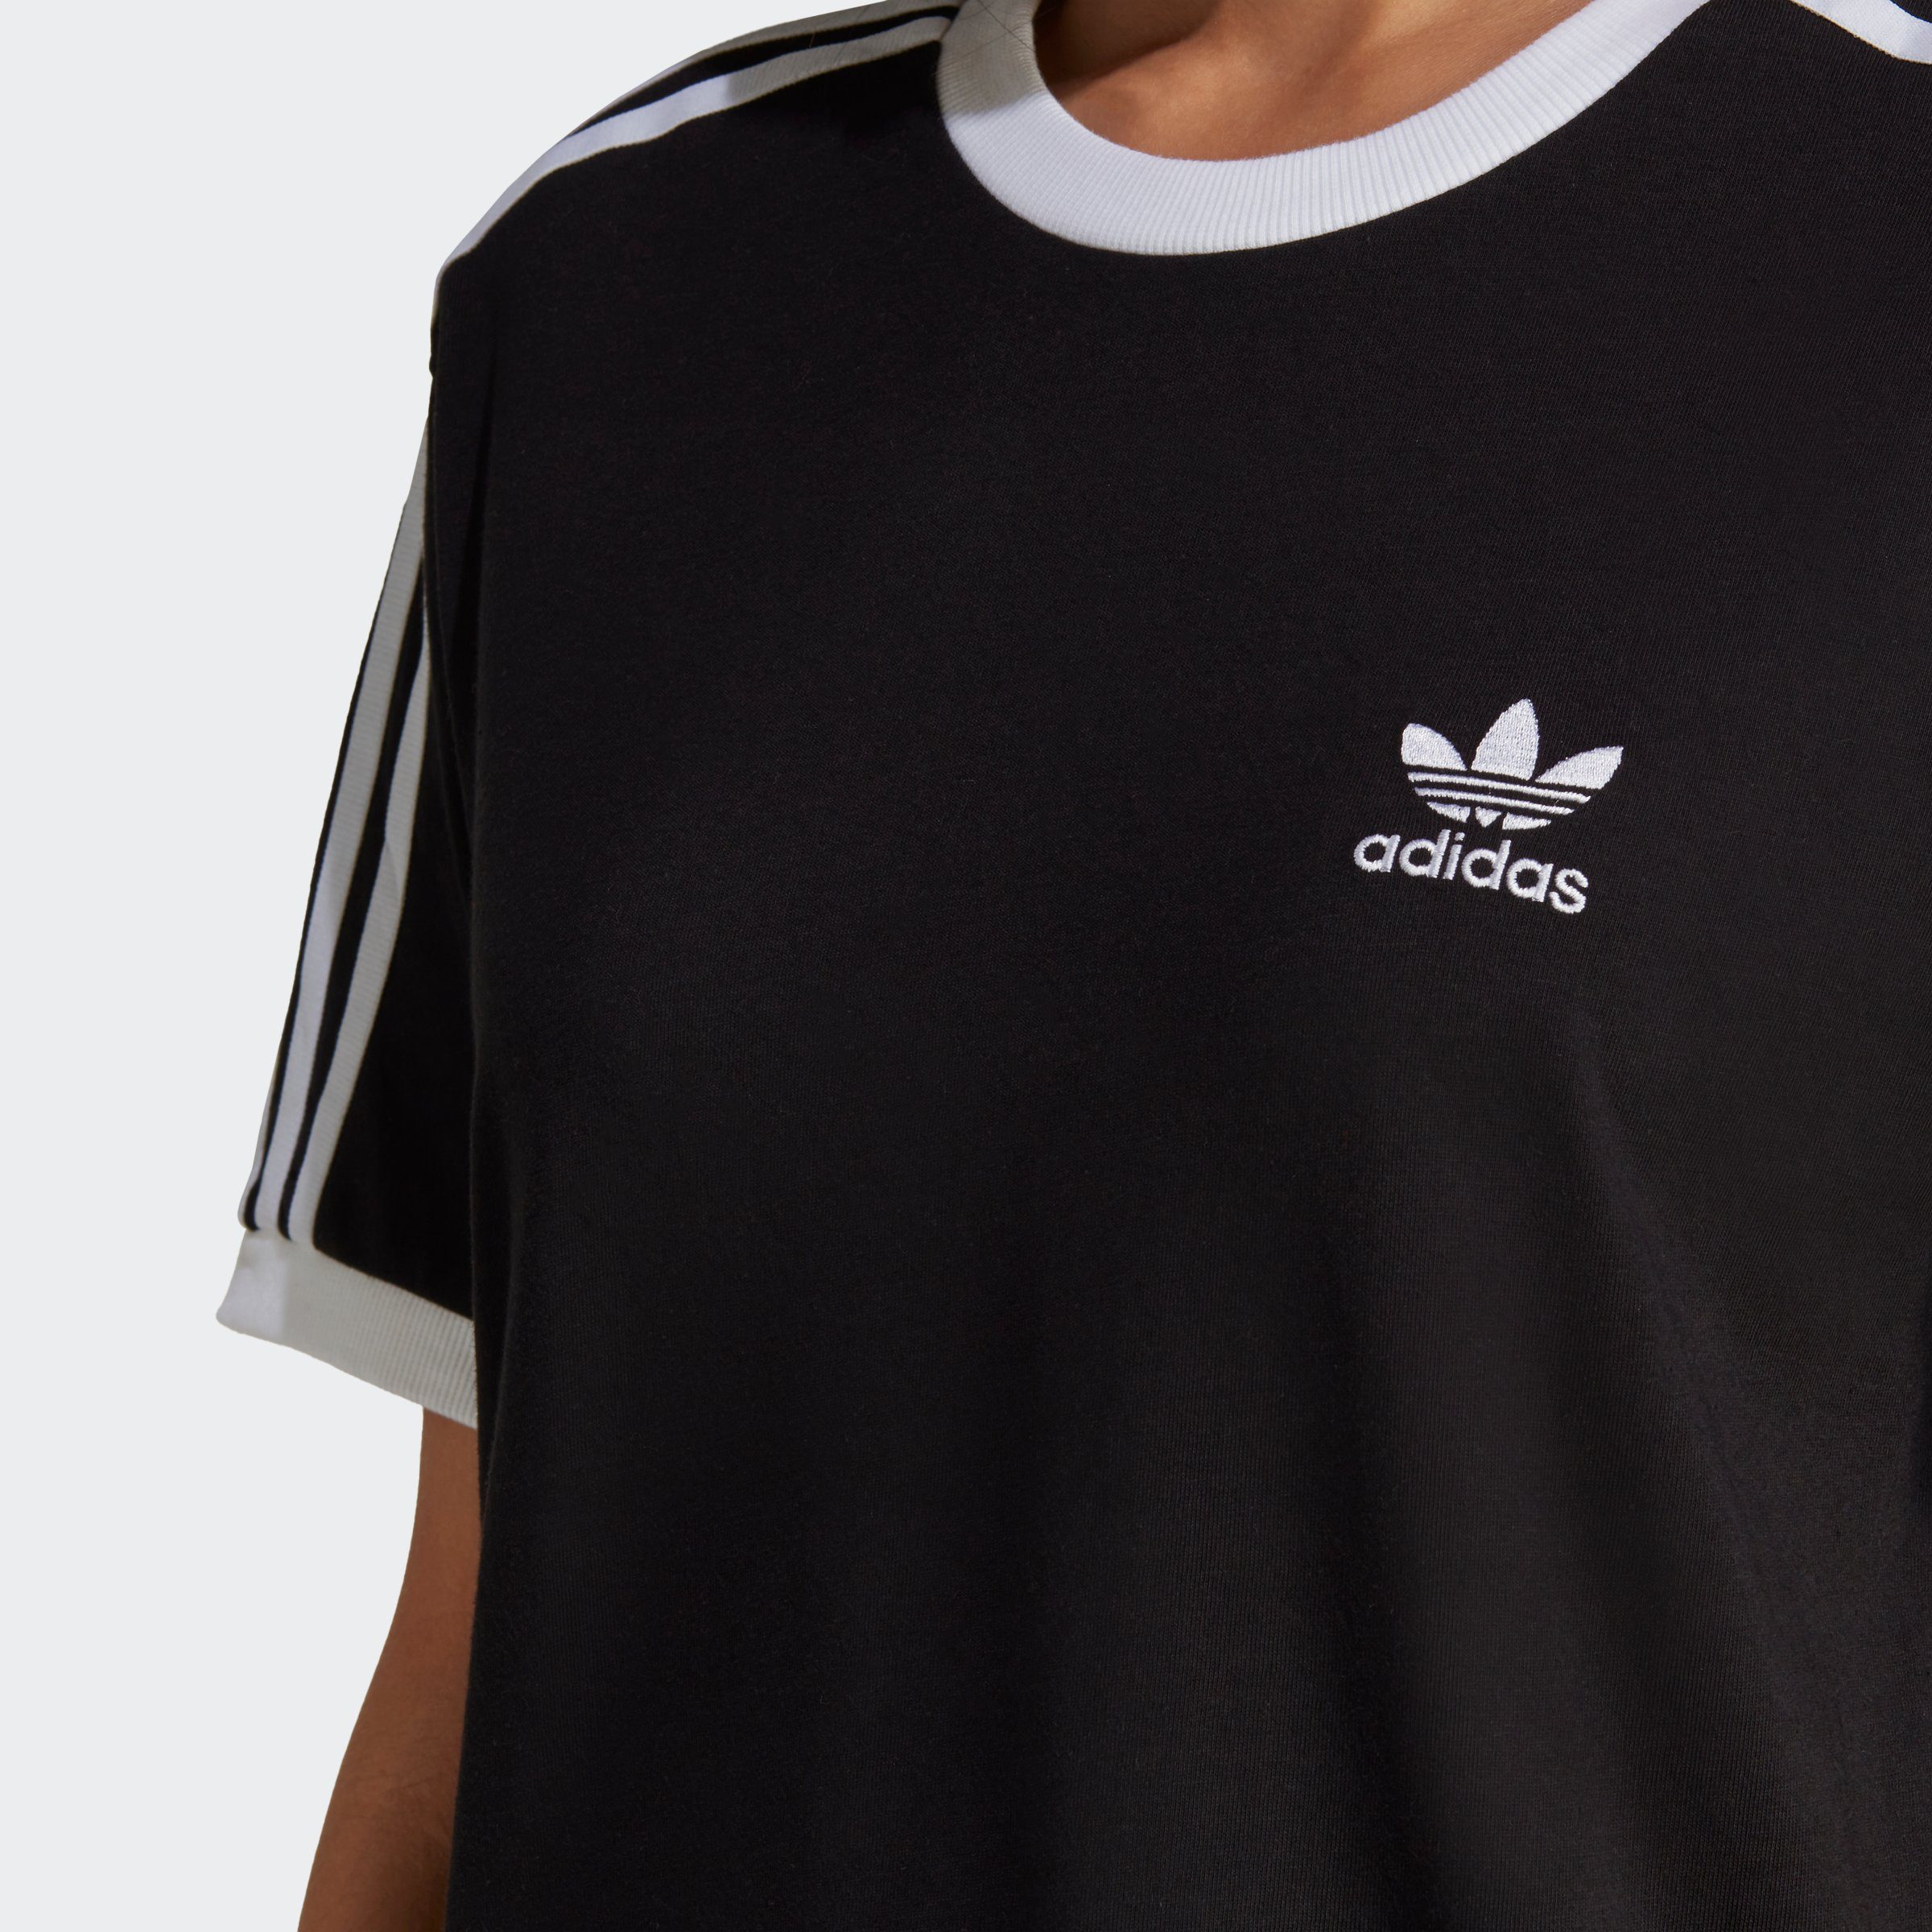 adidas T-Shirt ADICOLOR CLASSICS Originals 3-STREIFEN Black